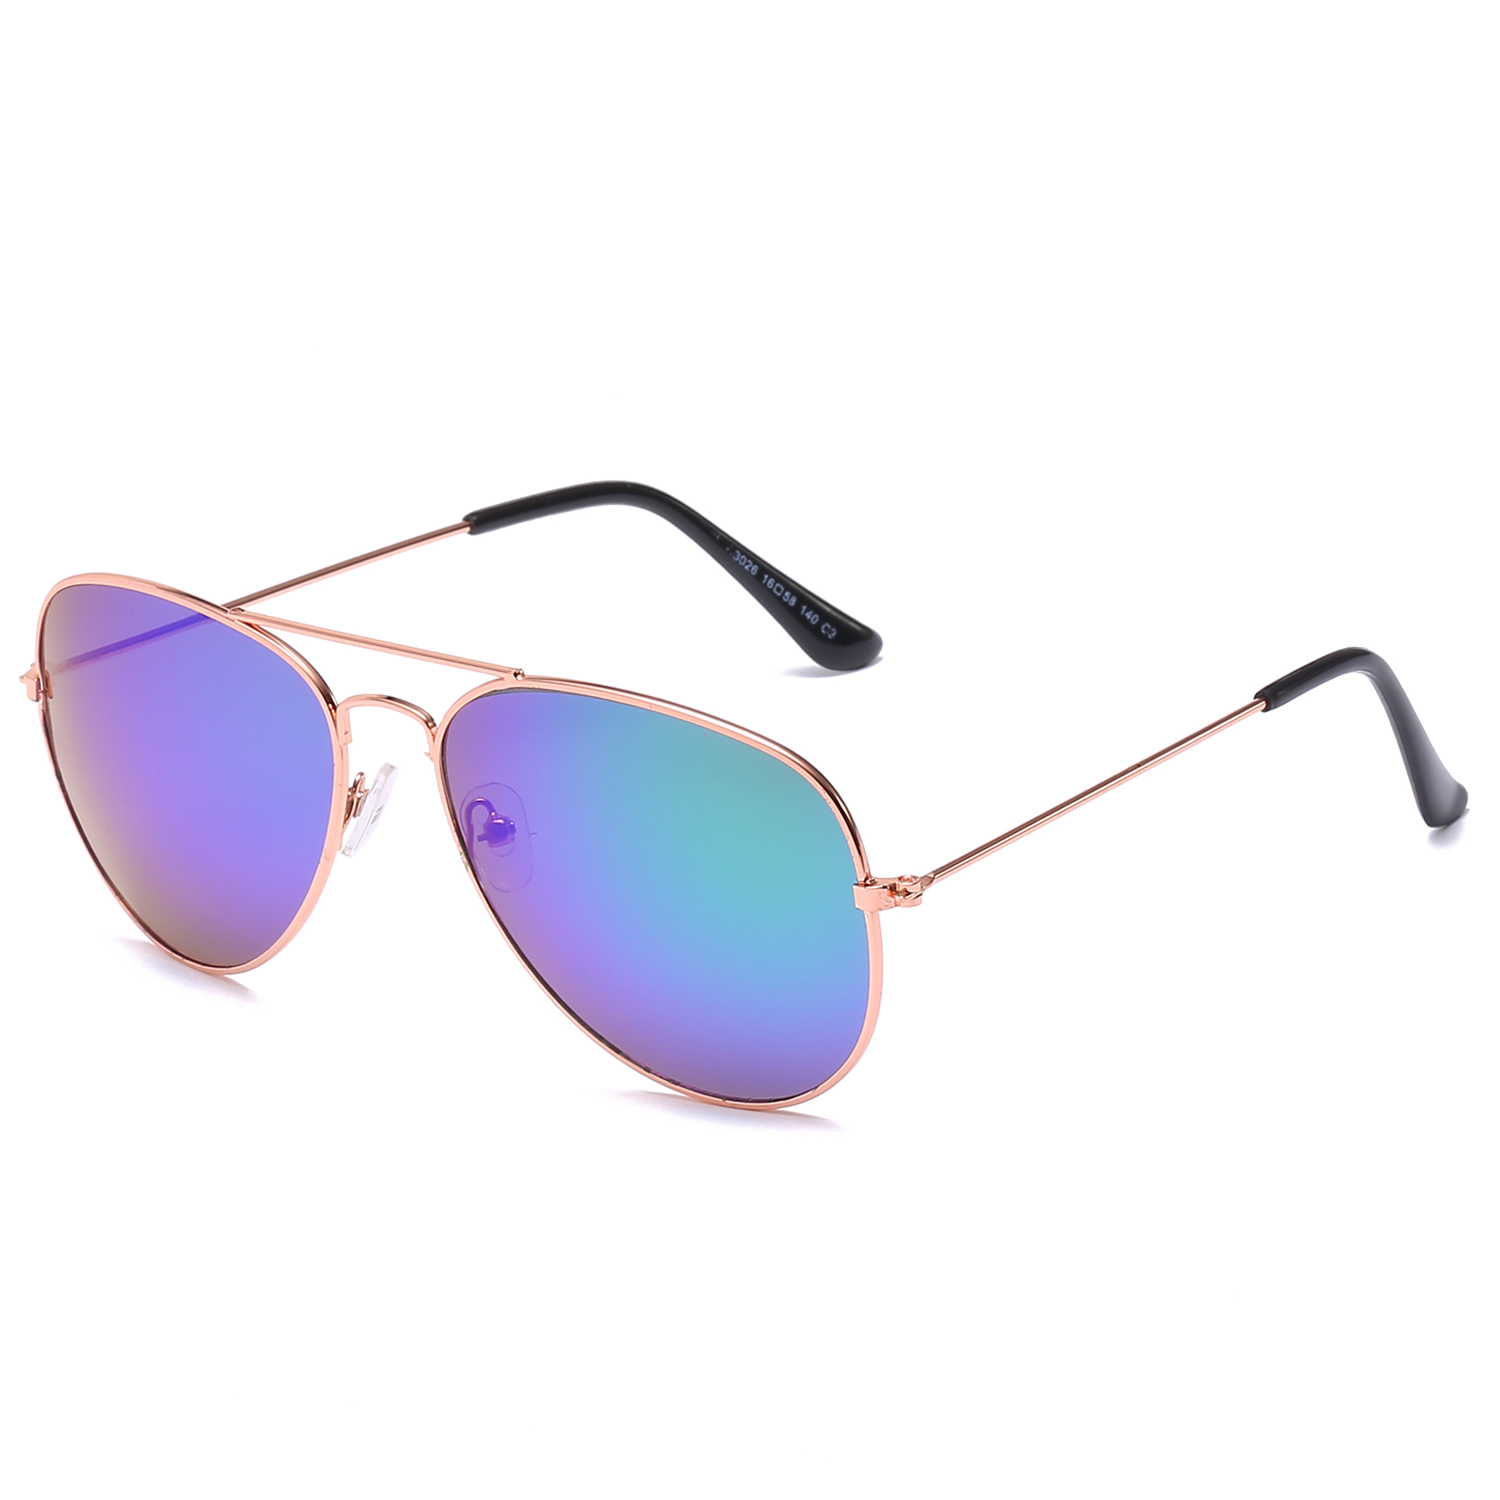 Yibaision Pilotenbrille Sonnenbrille für Herren und Damen UV400 Schutz Metall Rahmen Flieger Metallrahmen Verspiegelt Linse Sportbrillen 